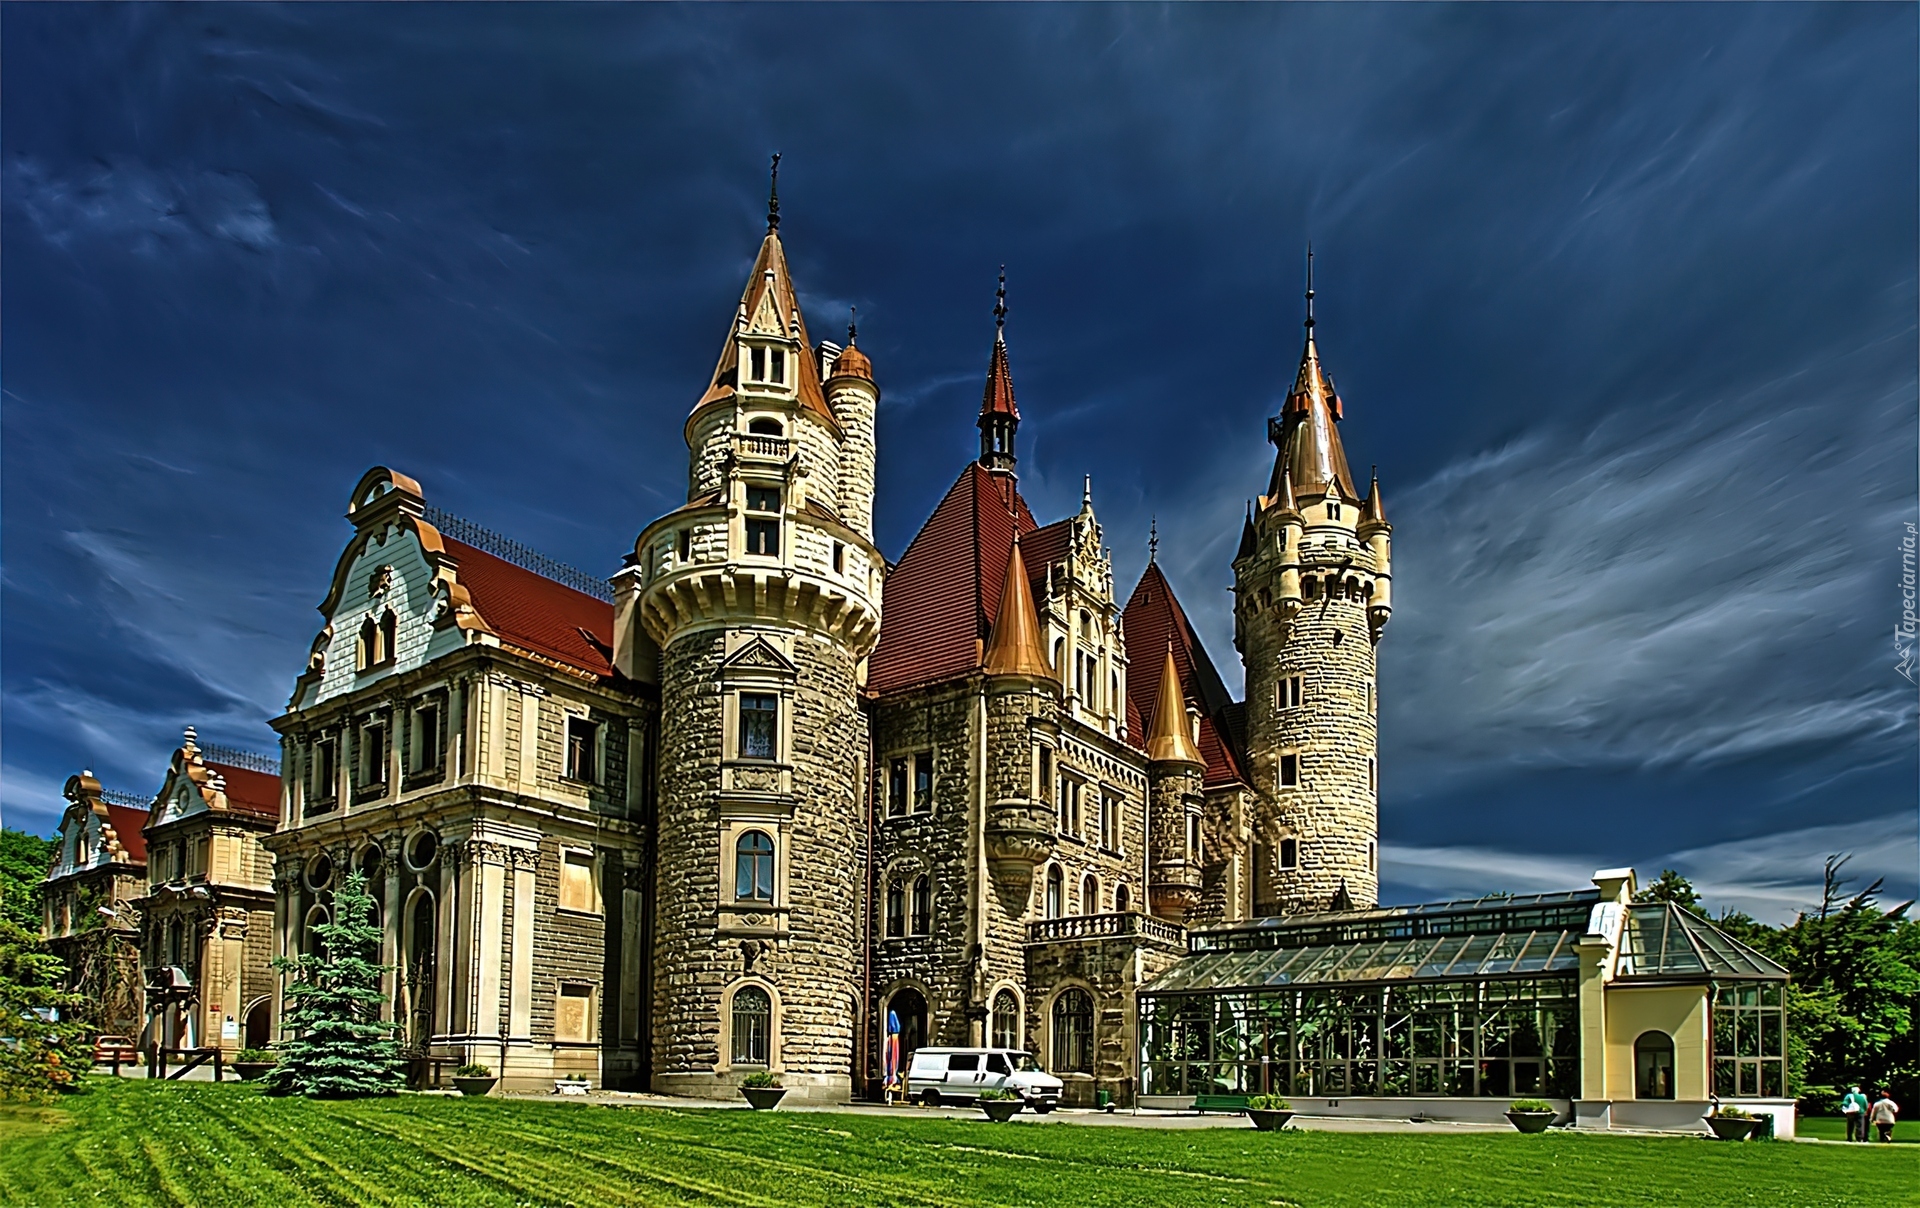 Zamek, Moszna, Polska